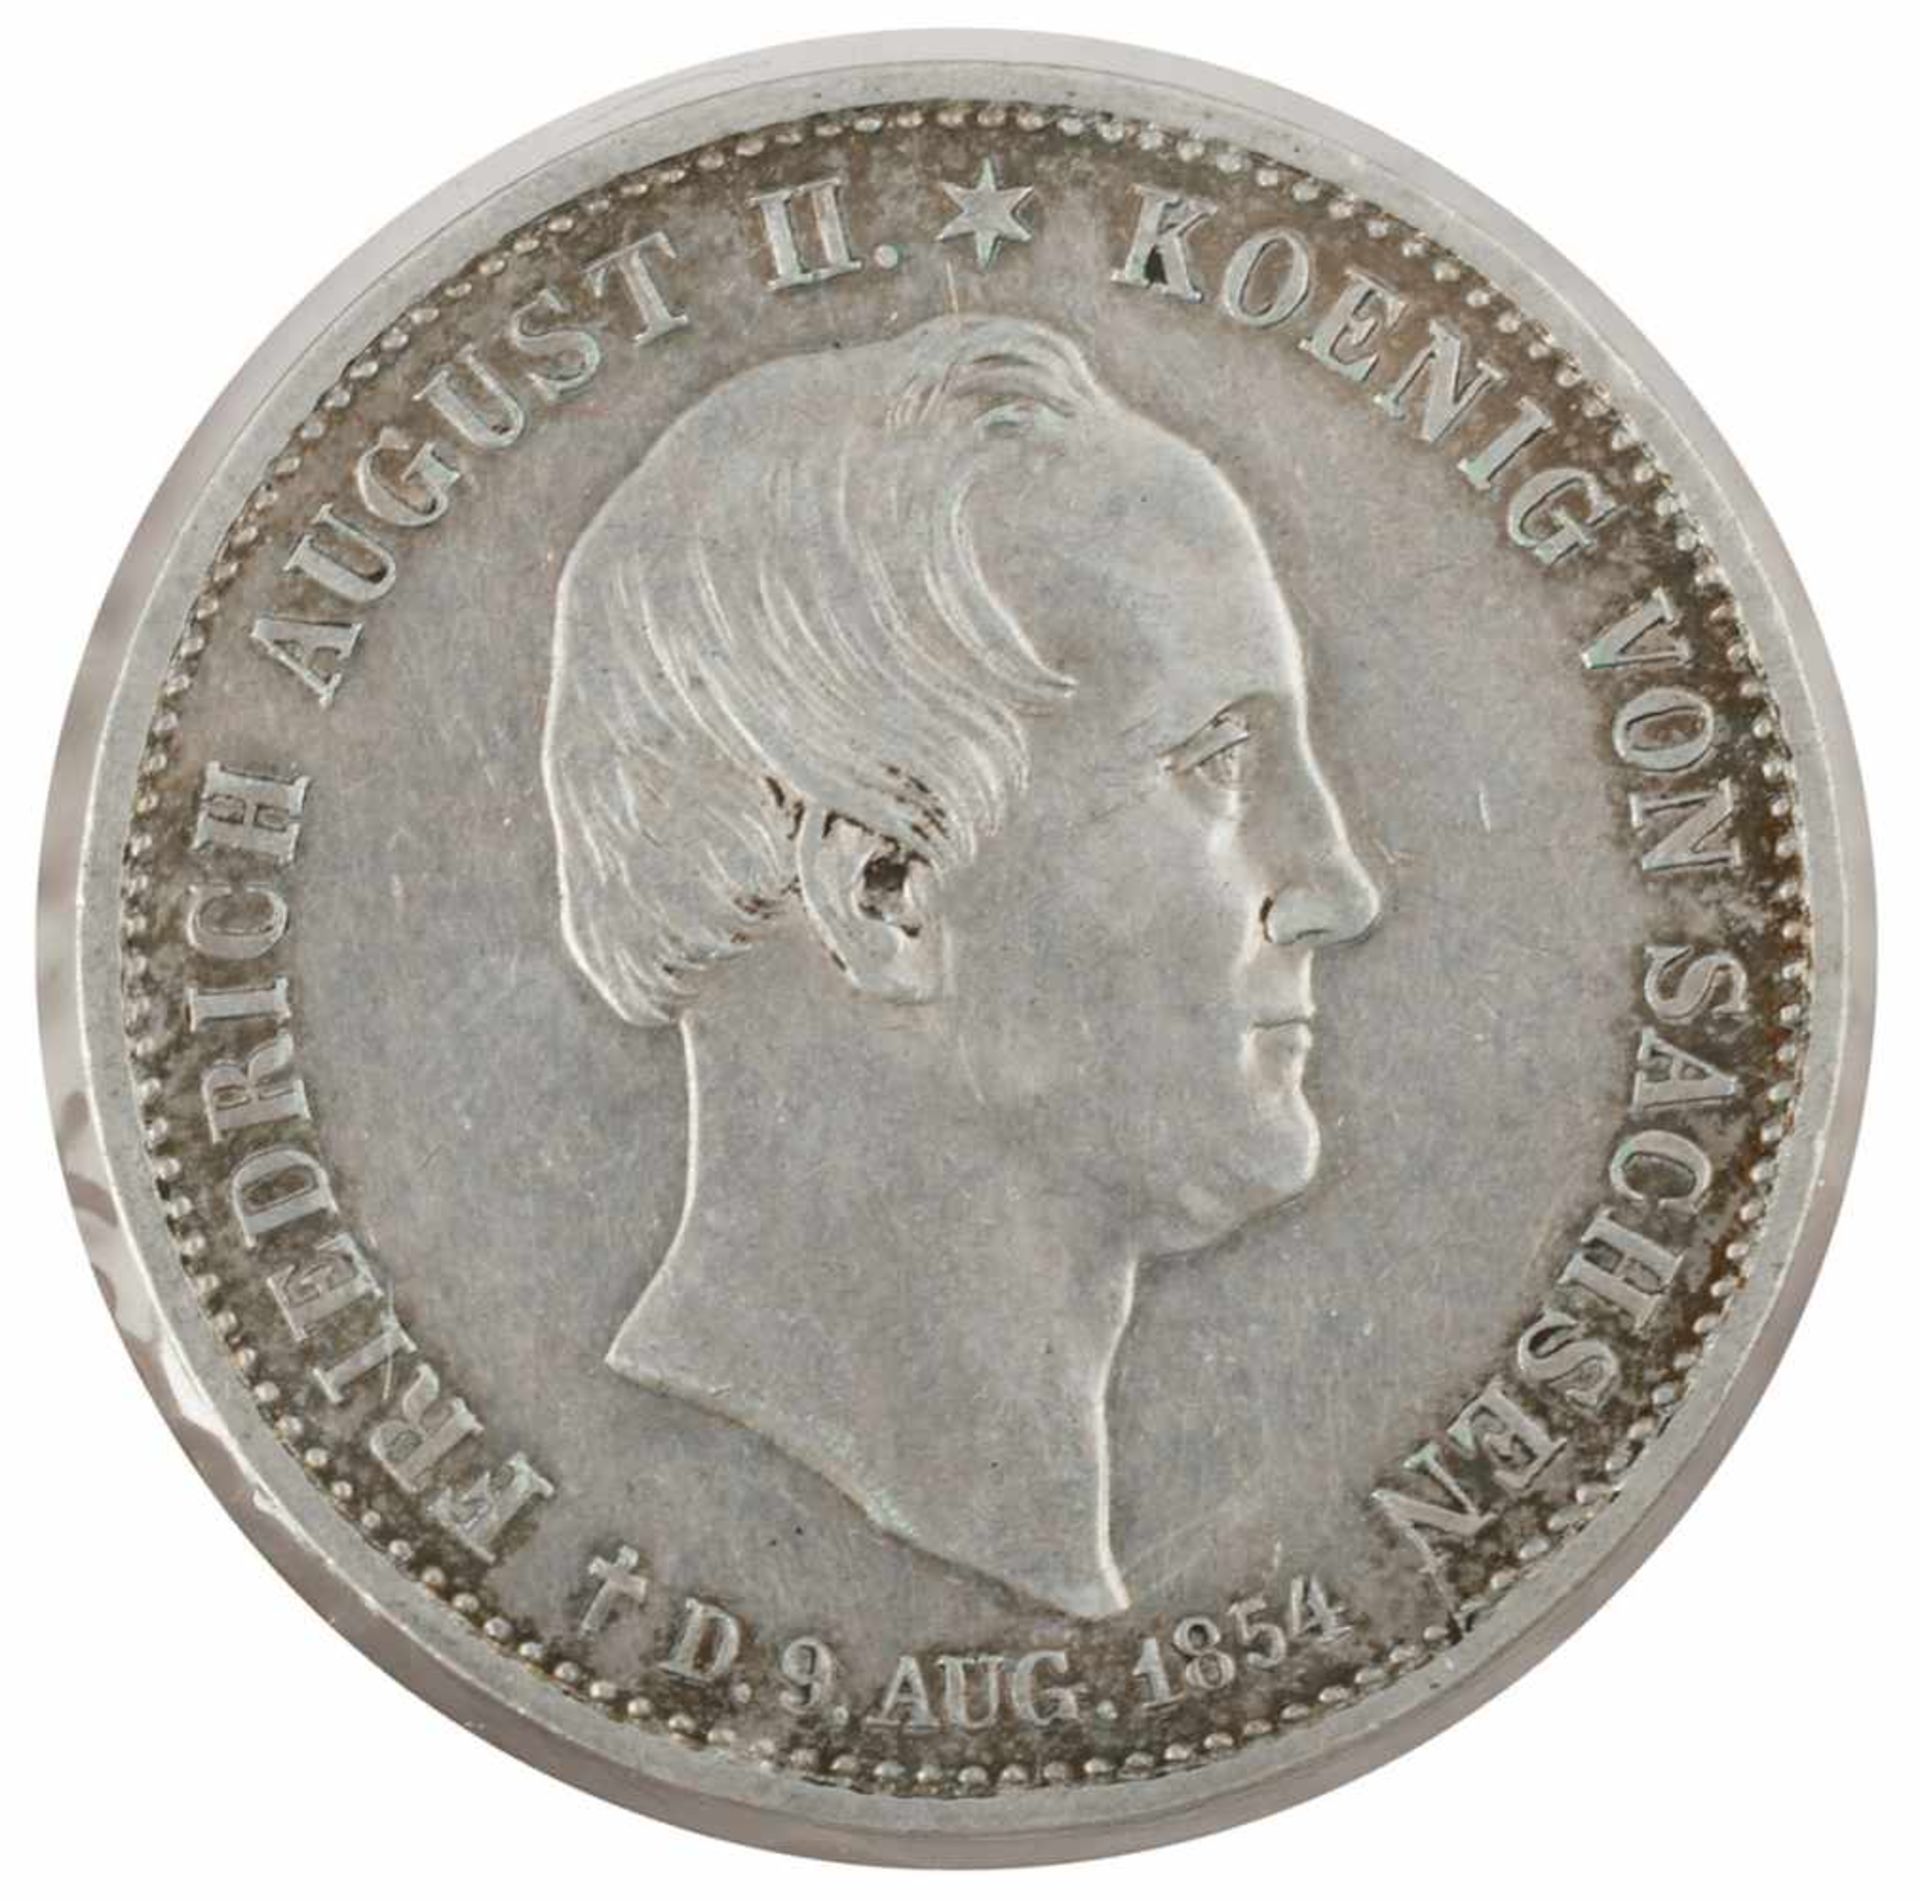 Sterbetaler Sachsen 1854 Silbertaler, av. Friedrich August II. König von Sachsen Kopf rechts über - Bild 3 aus 3